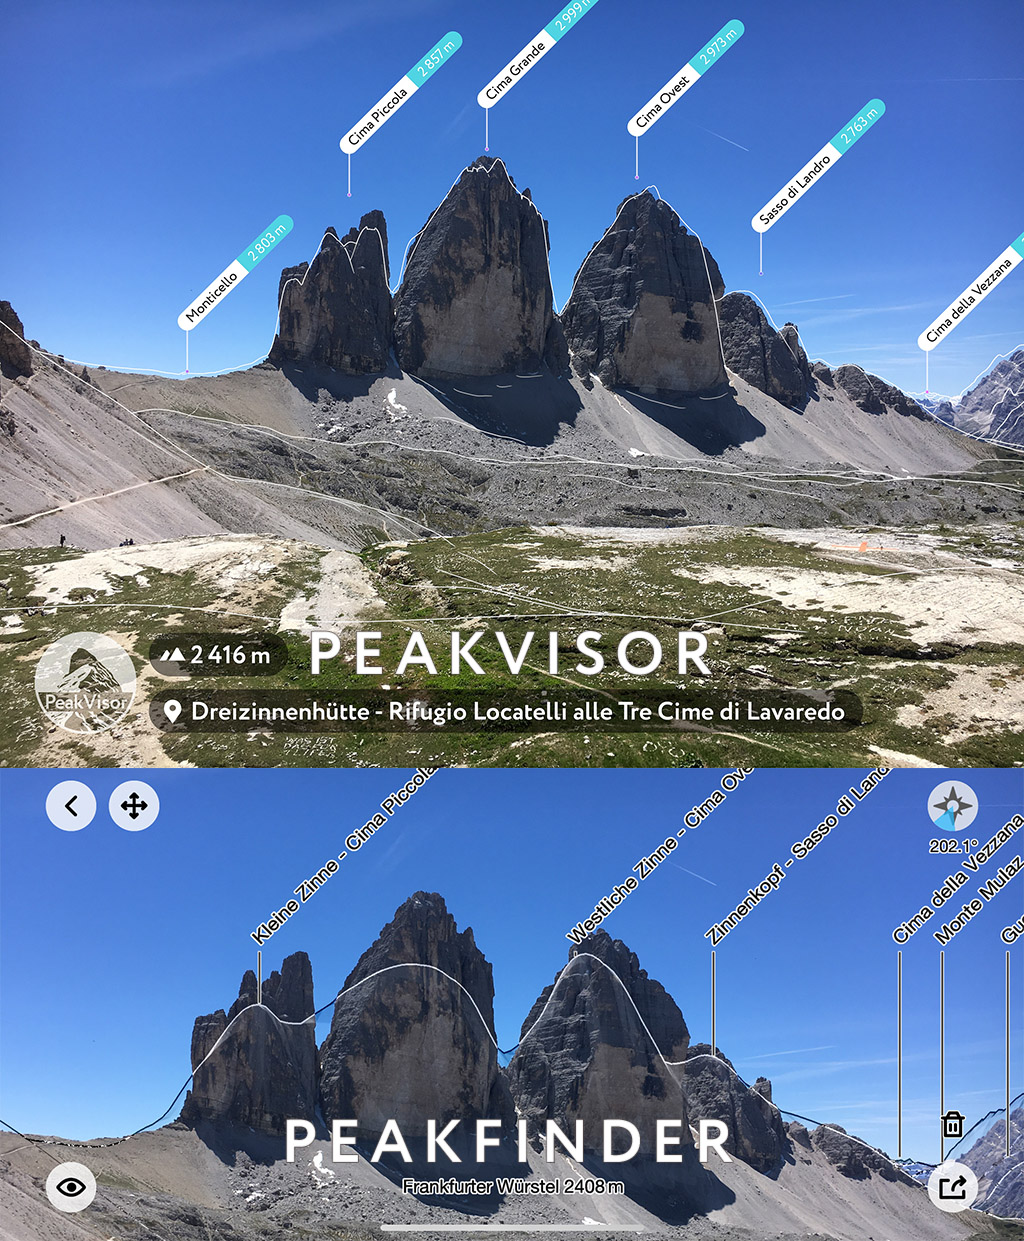 PeakFinder vs PeakVisor